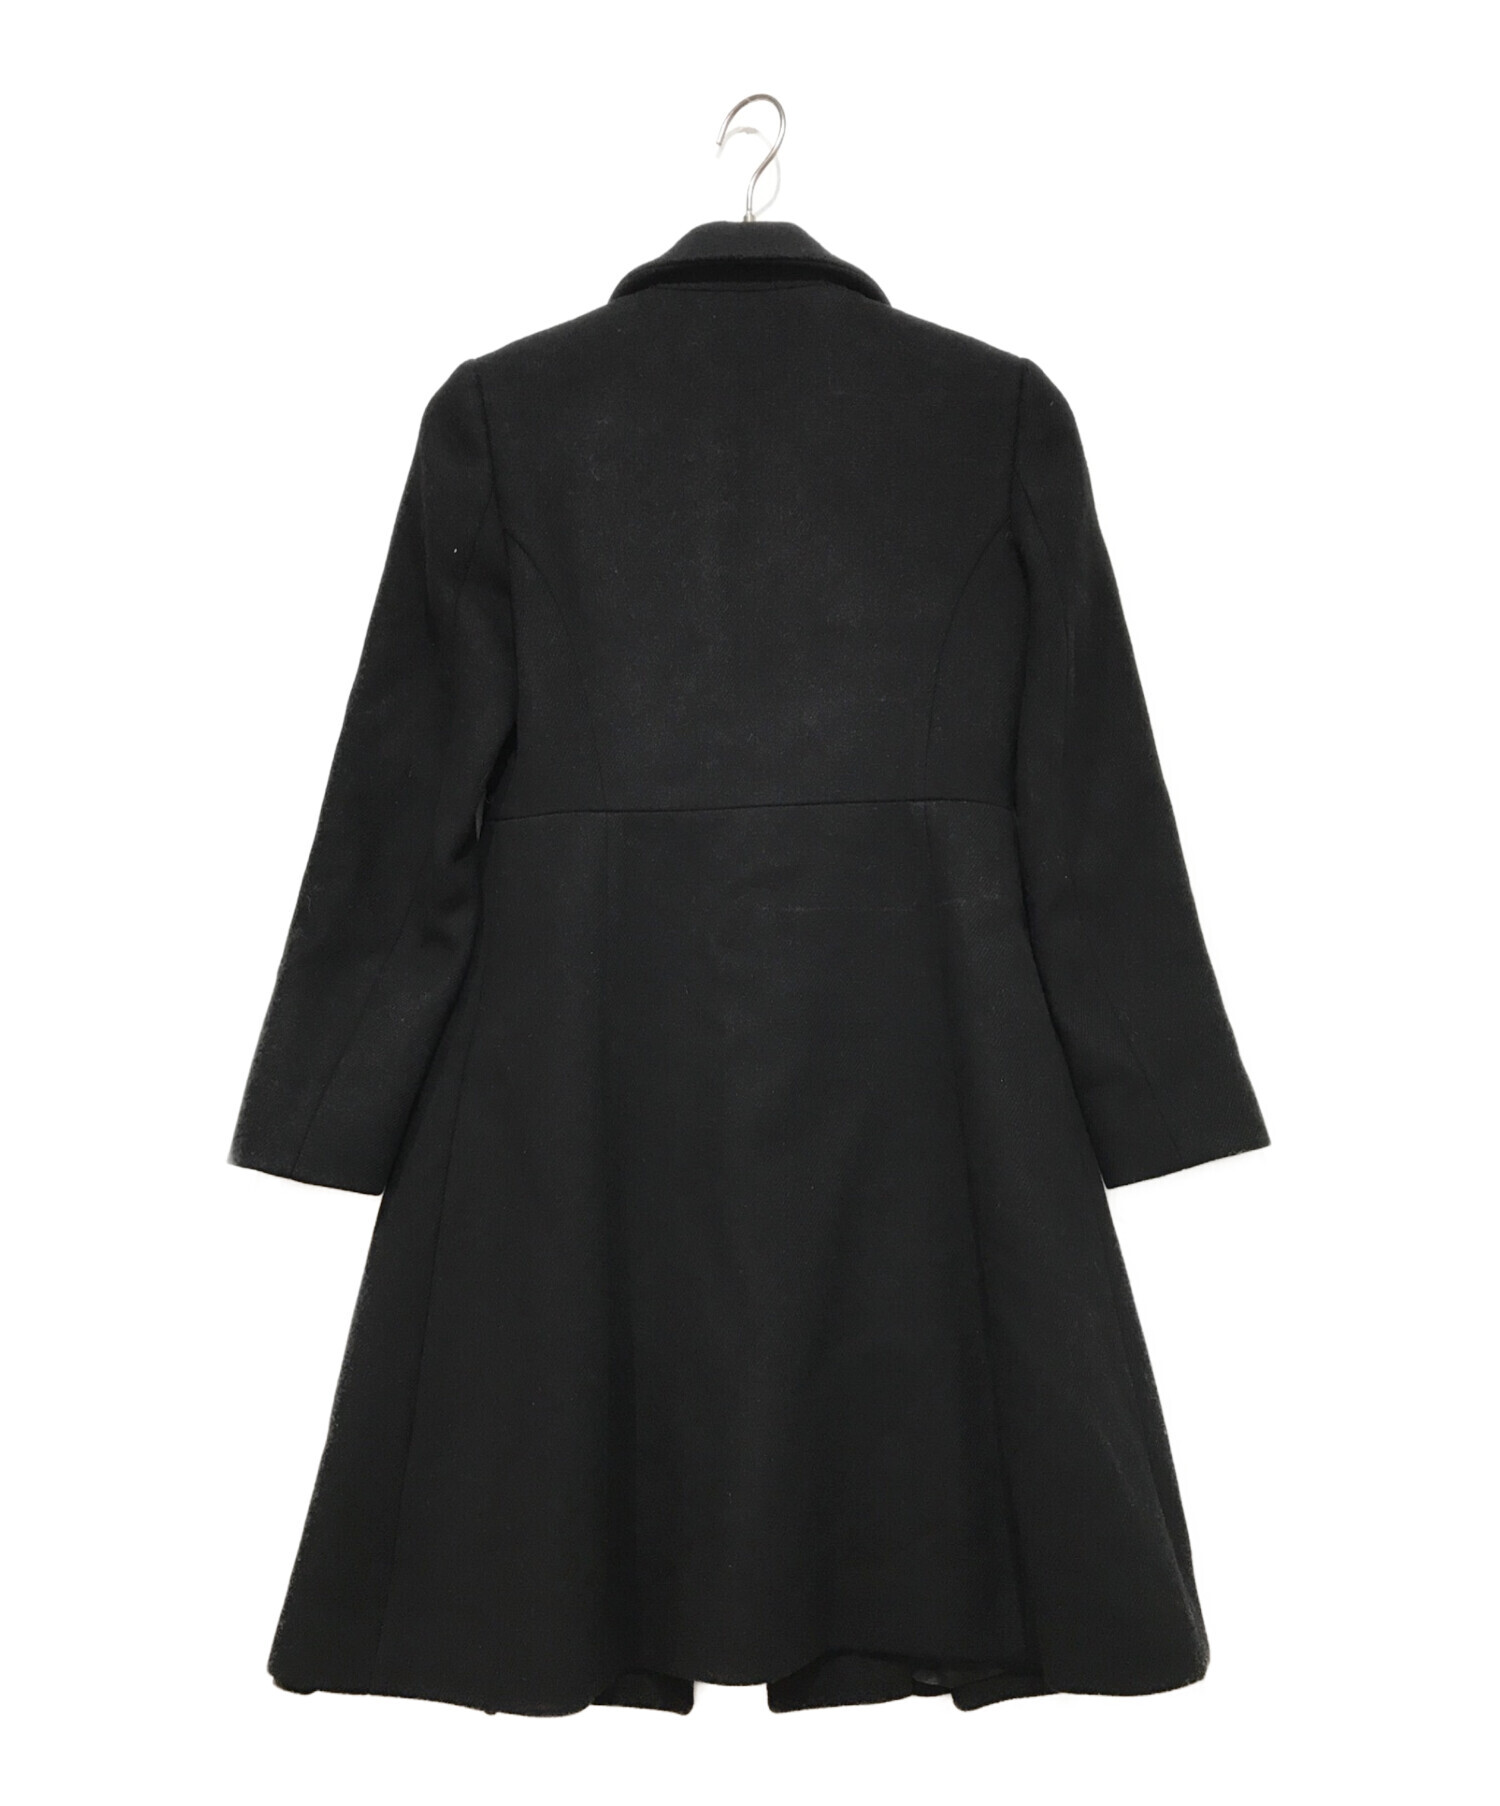 MIU MIU (ミュウミュウ) ウールコート ブラック サイズ:38